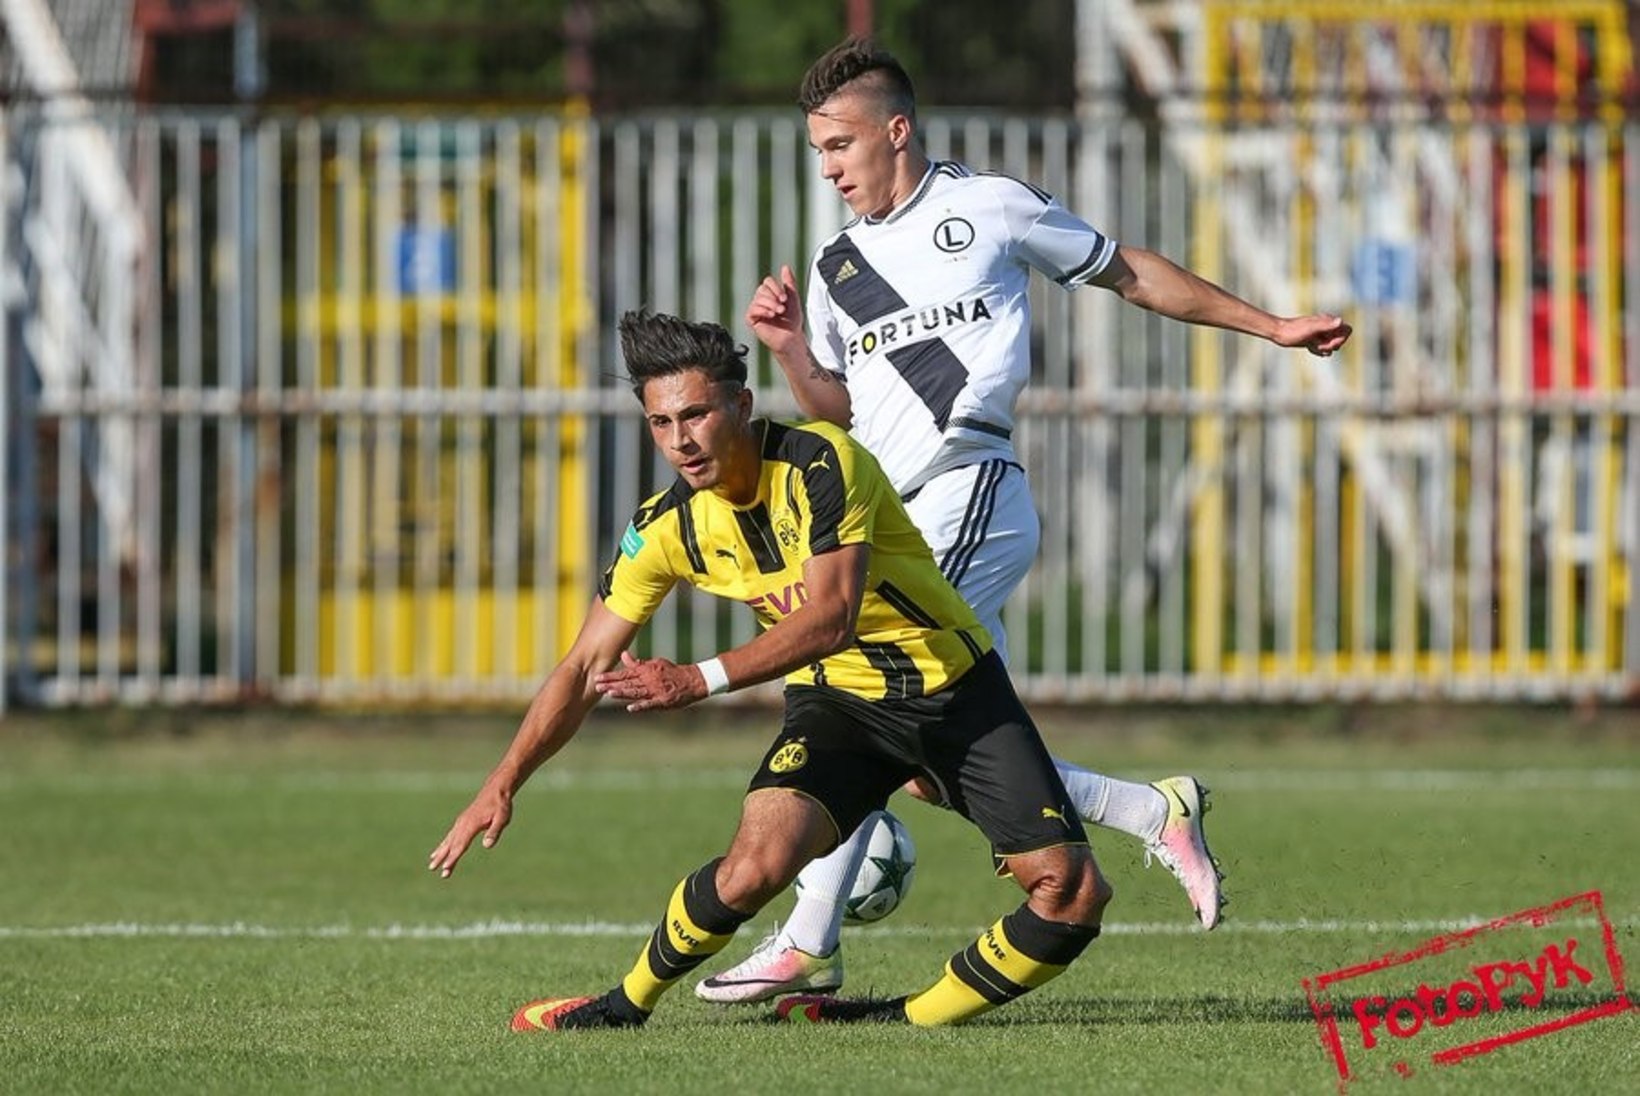 KURB: ülitõsiselt vigastada saanud Dortmundi noor talent lõpetas vaid 21aastaselt karjääri